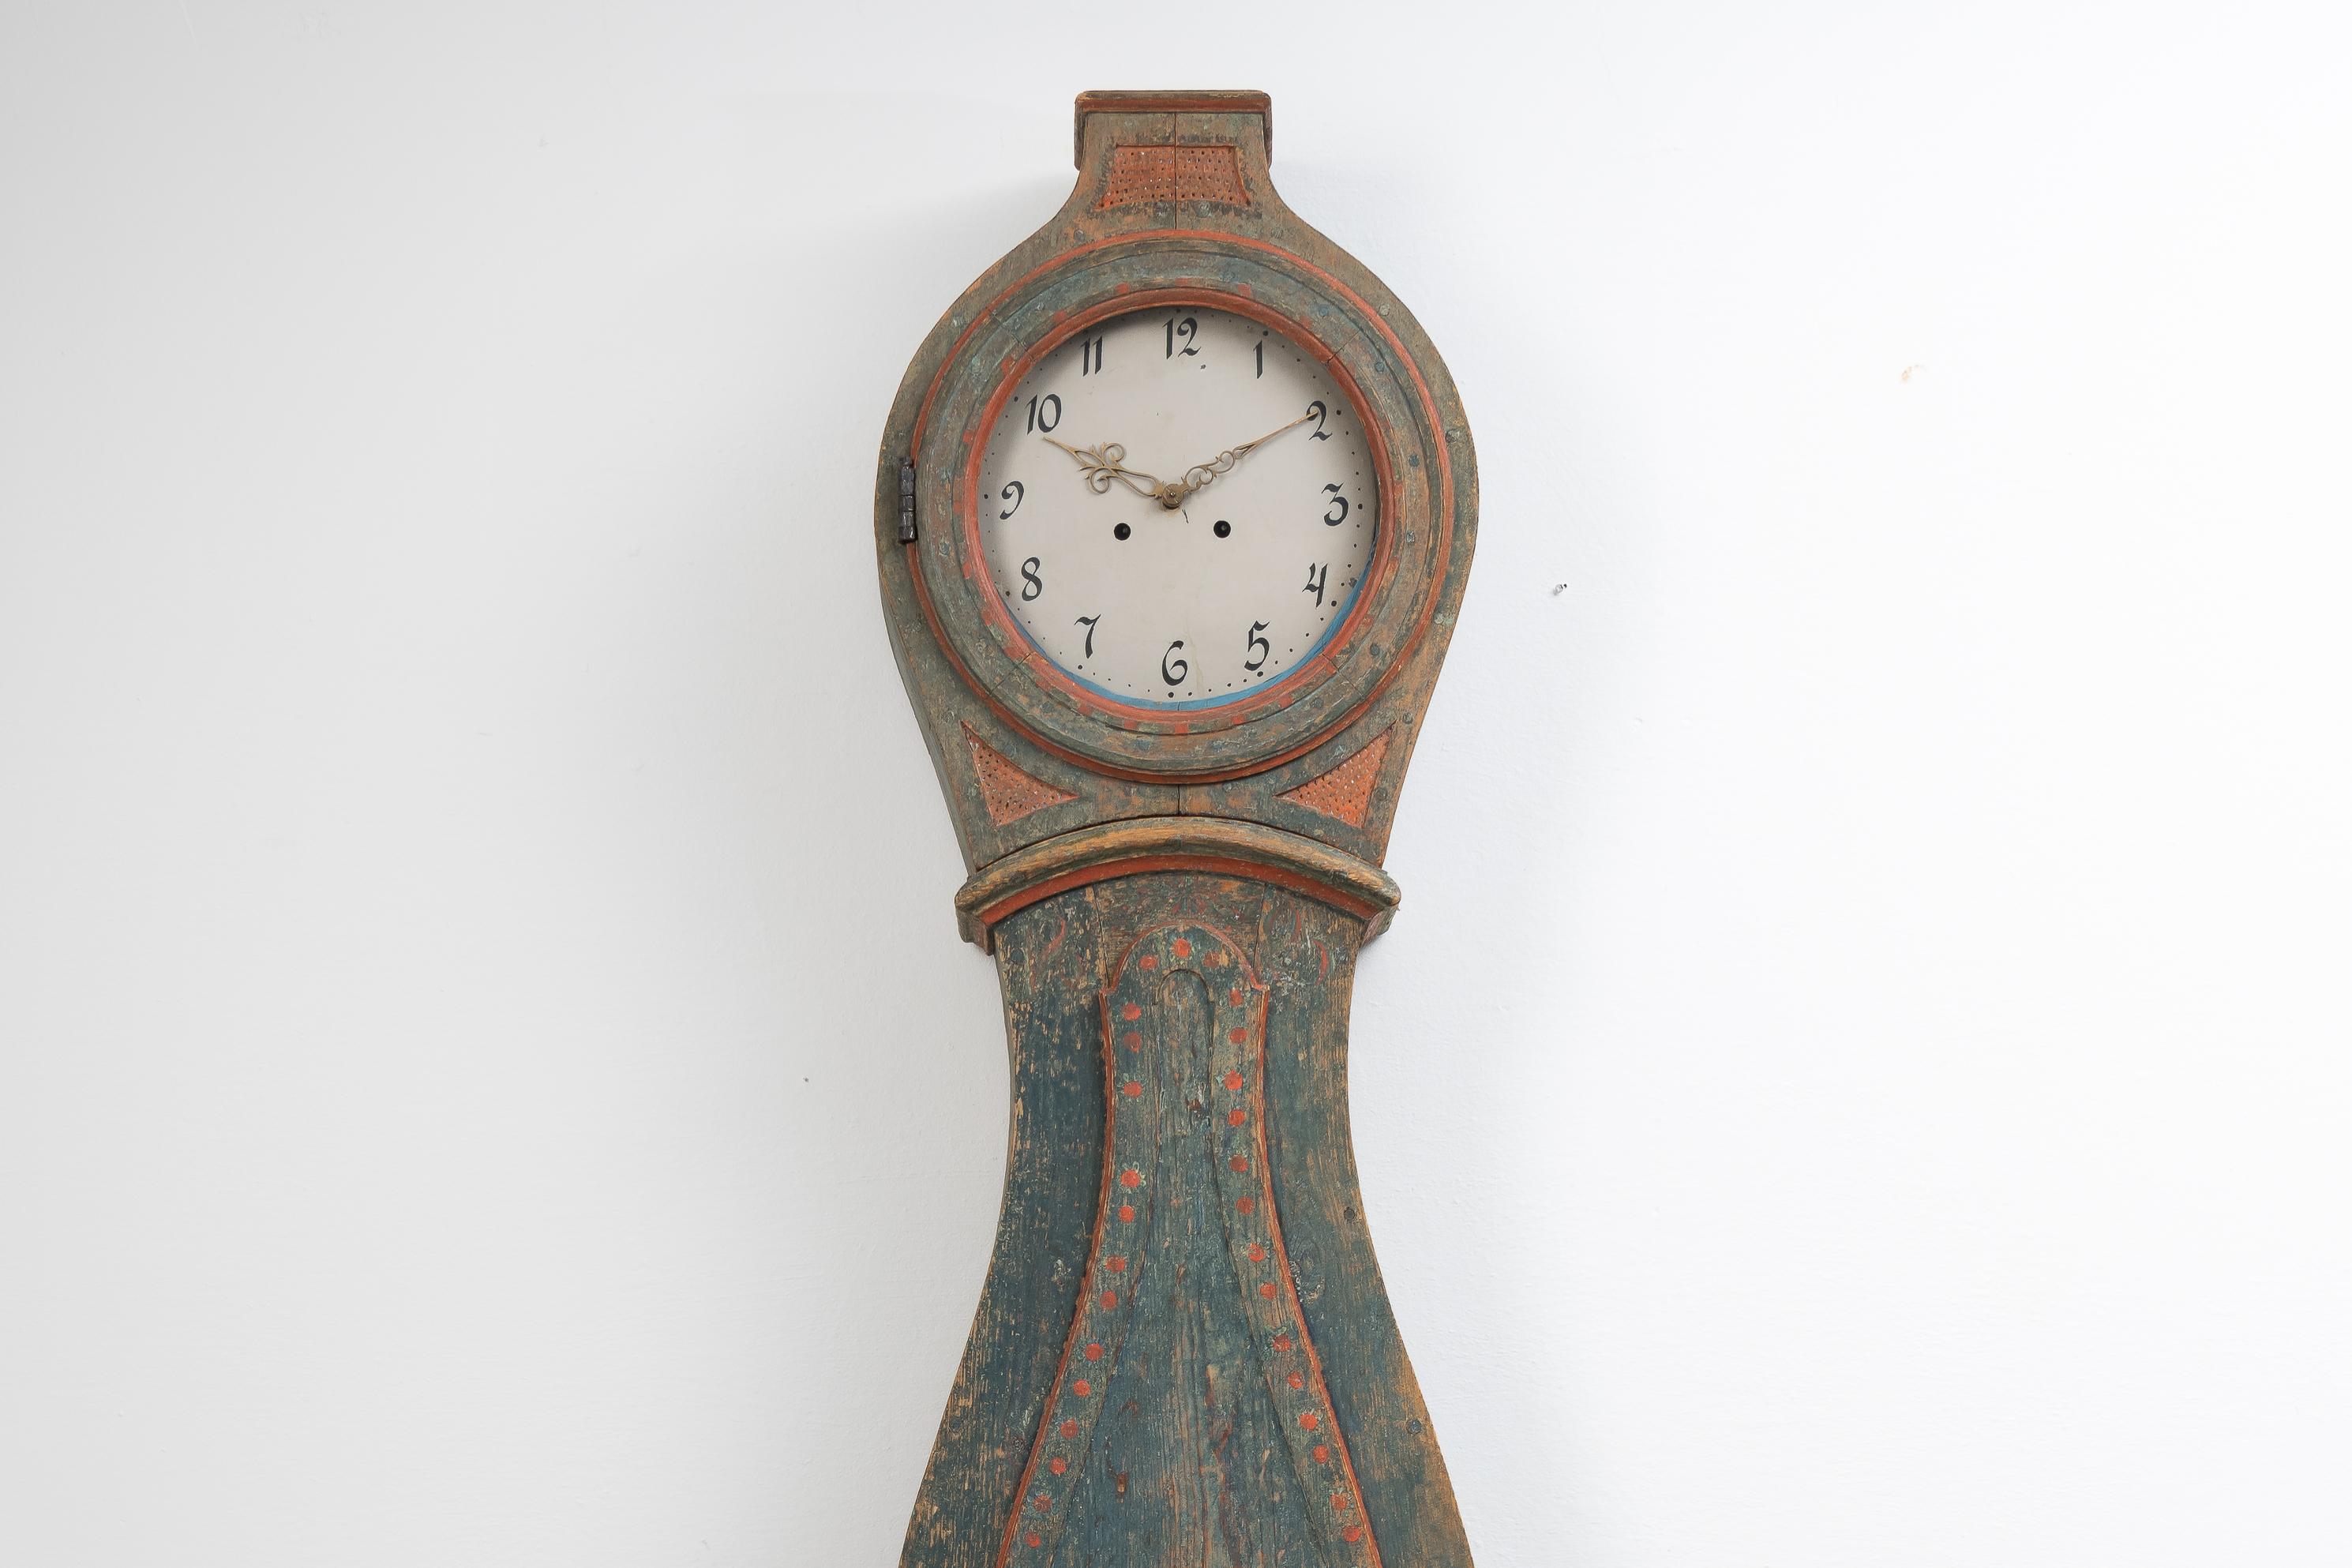 Véritable horloge suédoise à long boîtier du Hälsingland. L'horloge est authentique et honnête avec un boîtier traditionnellement fait à la main avec une forme rococo. Fabriqué en pin suédois avec la peinture bleue verte et la peinture décorative